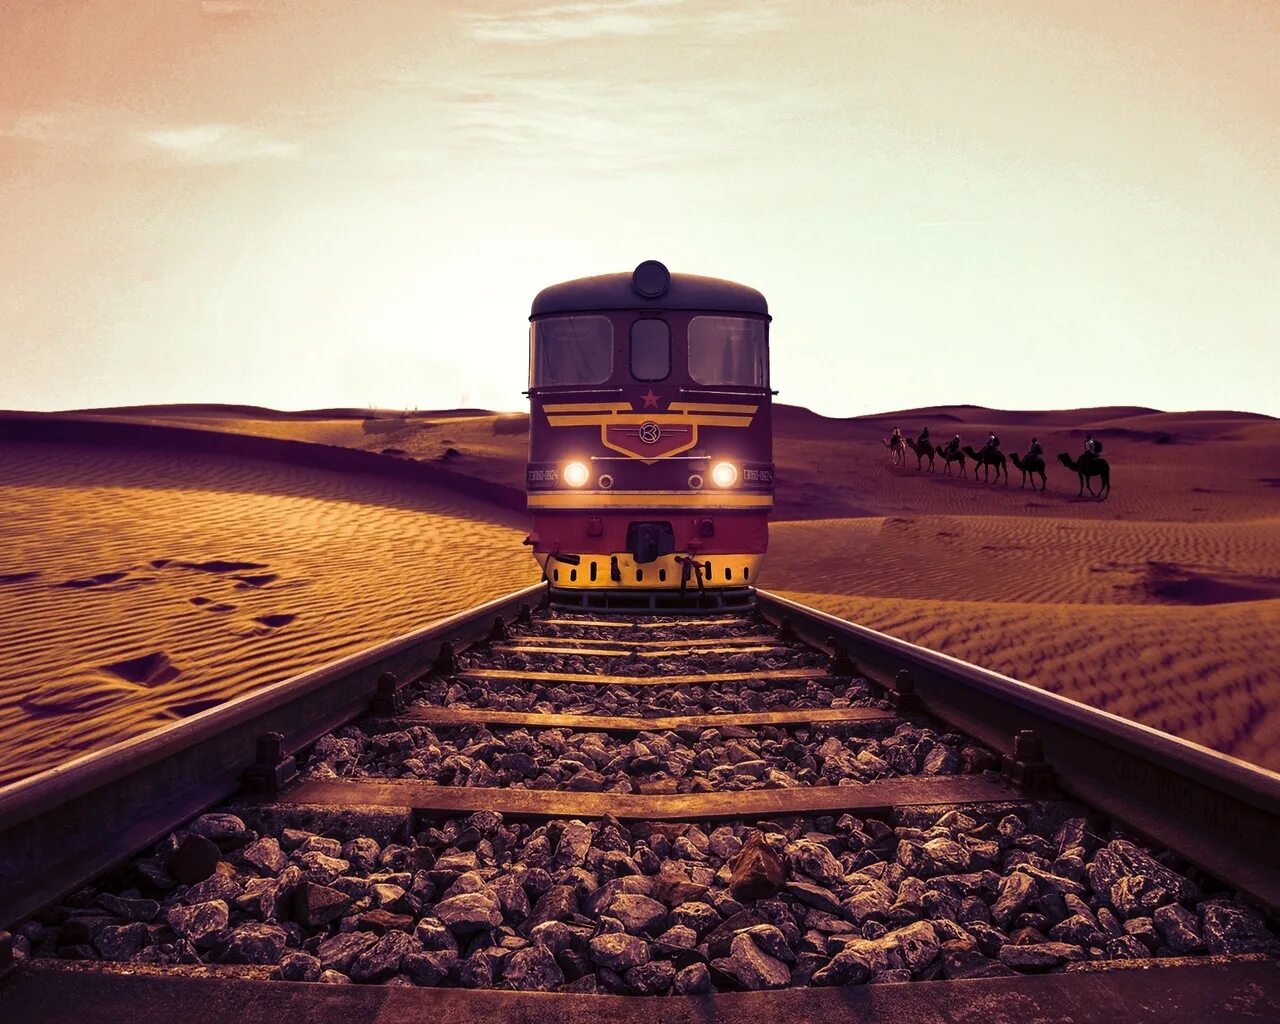 Едем поездом 10 часов. Железная дорога. Поезд фон. Поезд впереди. Железная дорога в пустыне.